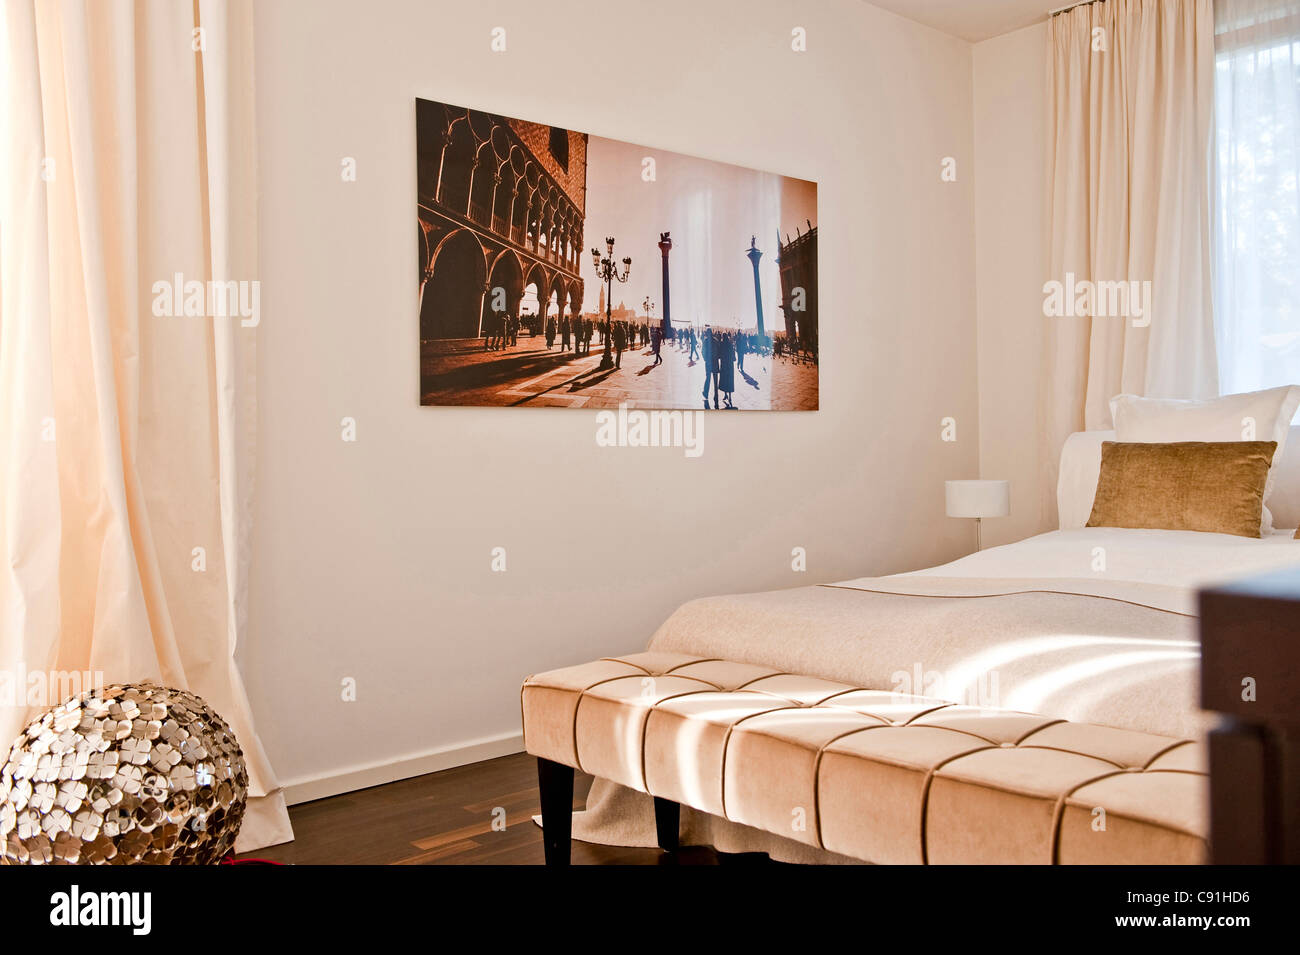 Stampa fotografica in camera da letto, Amburgo, Germania Foto Stock